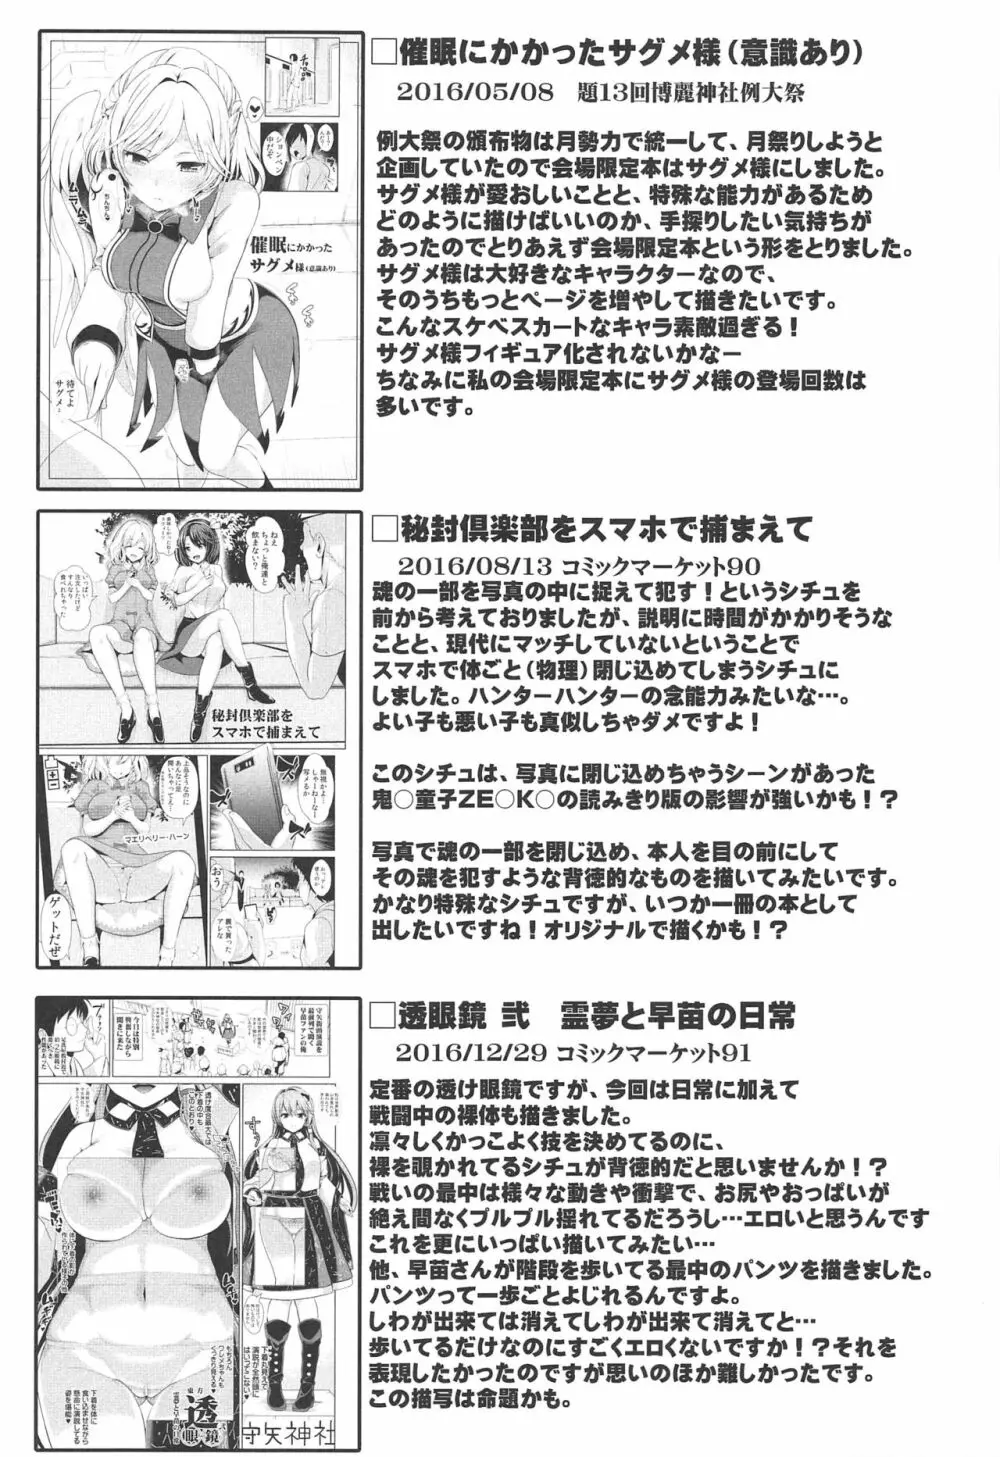 特殊シチュ短編総集編 東方シコるッ! 2 - page82